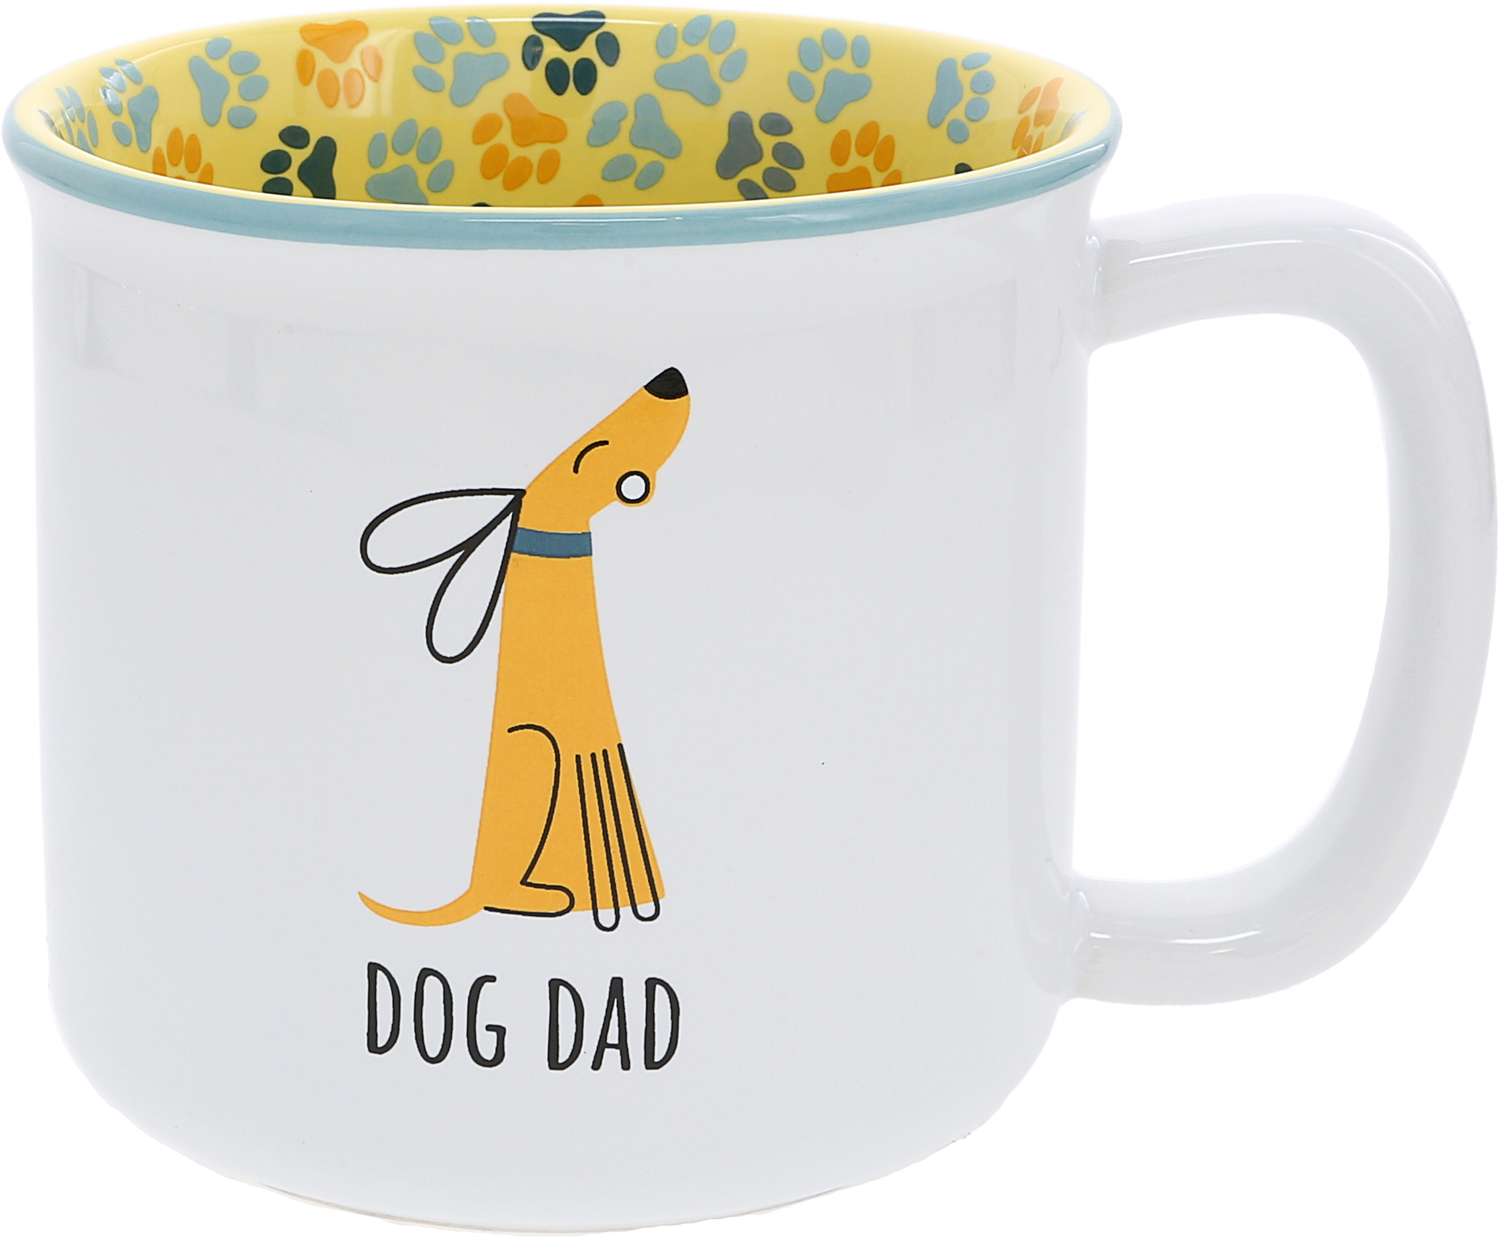 Dog Dad by Pawsome Pals - Dog Dad - 18 oz Mug